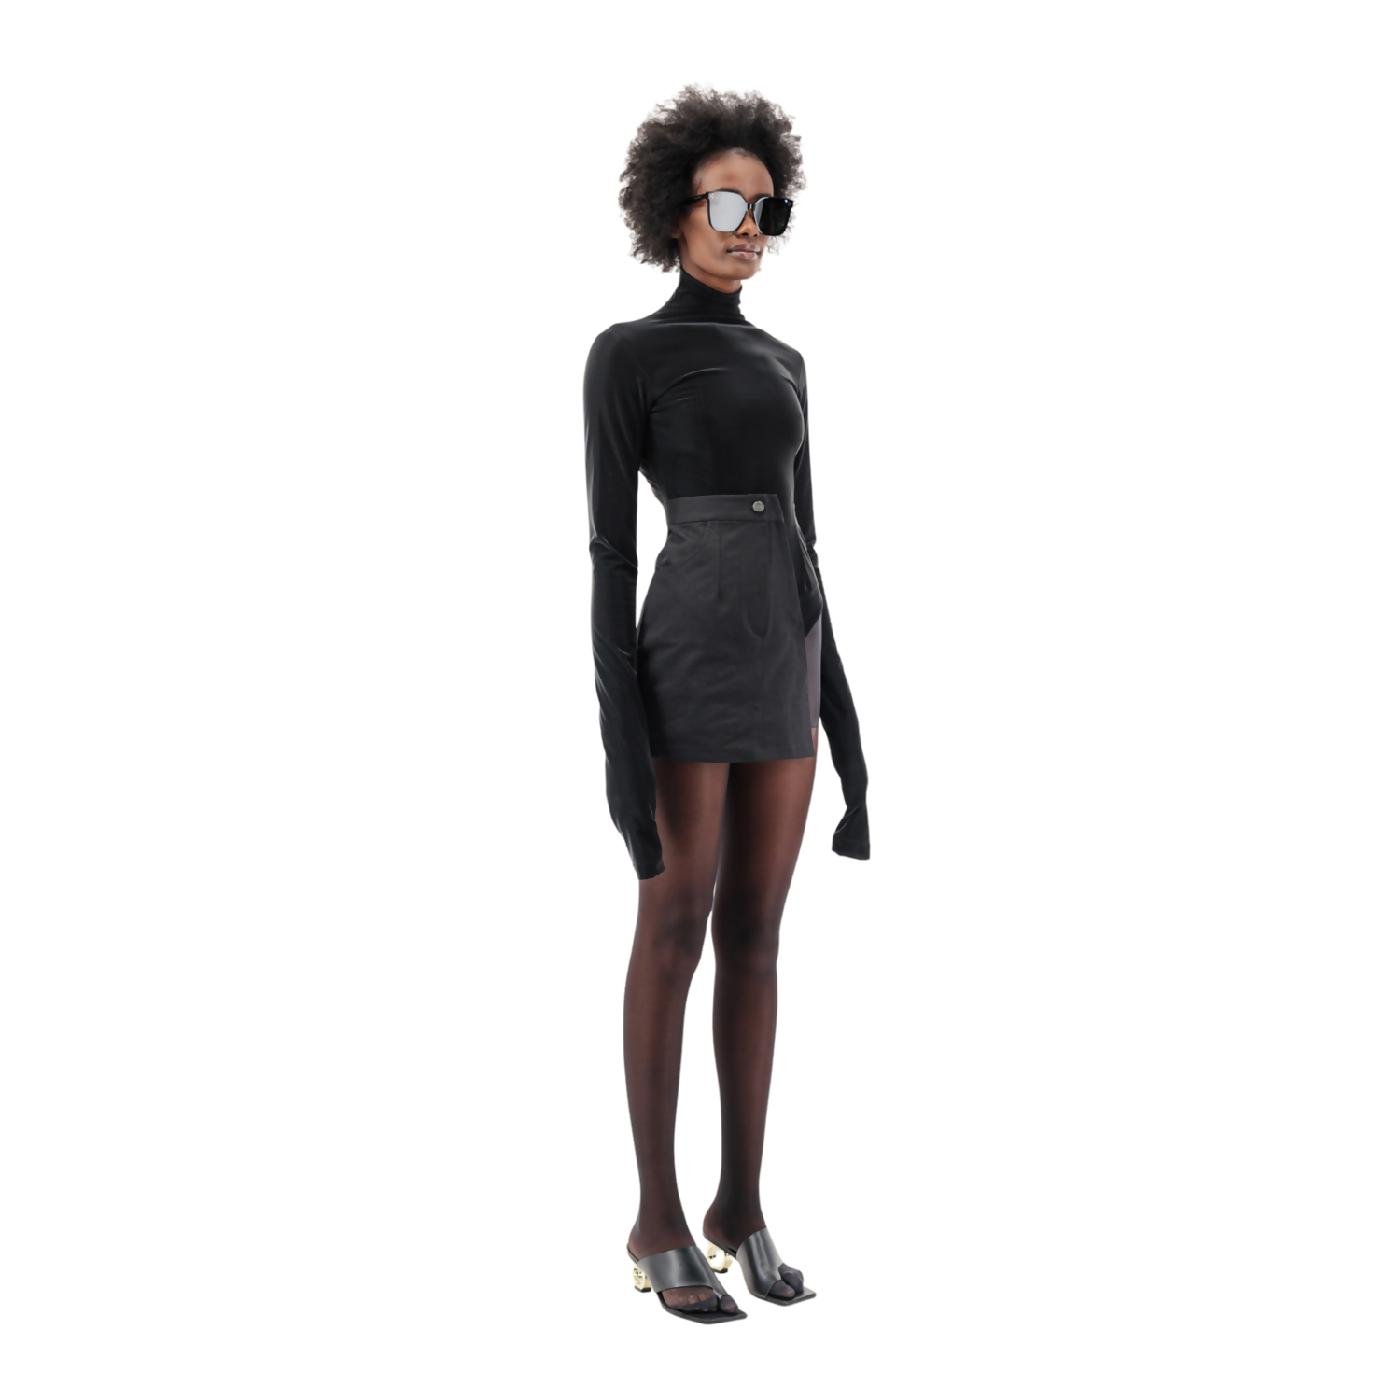 Velvet Half Skirt Bodysuit by UCHE